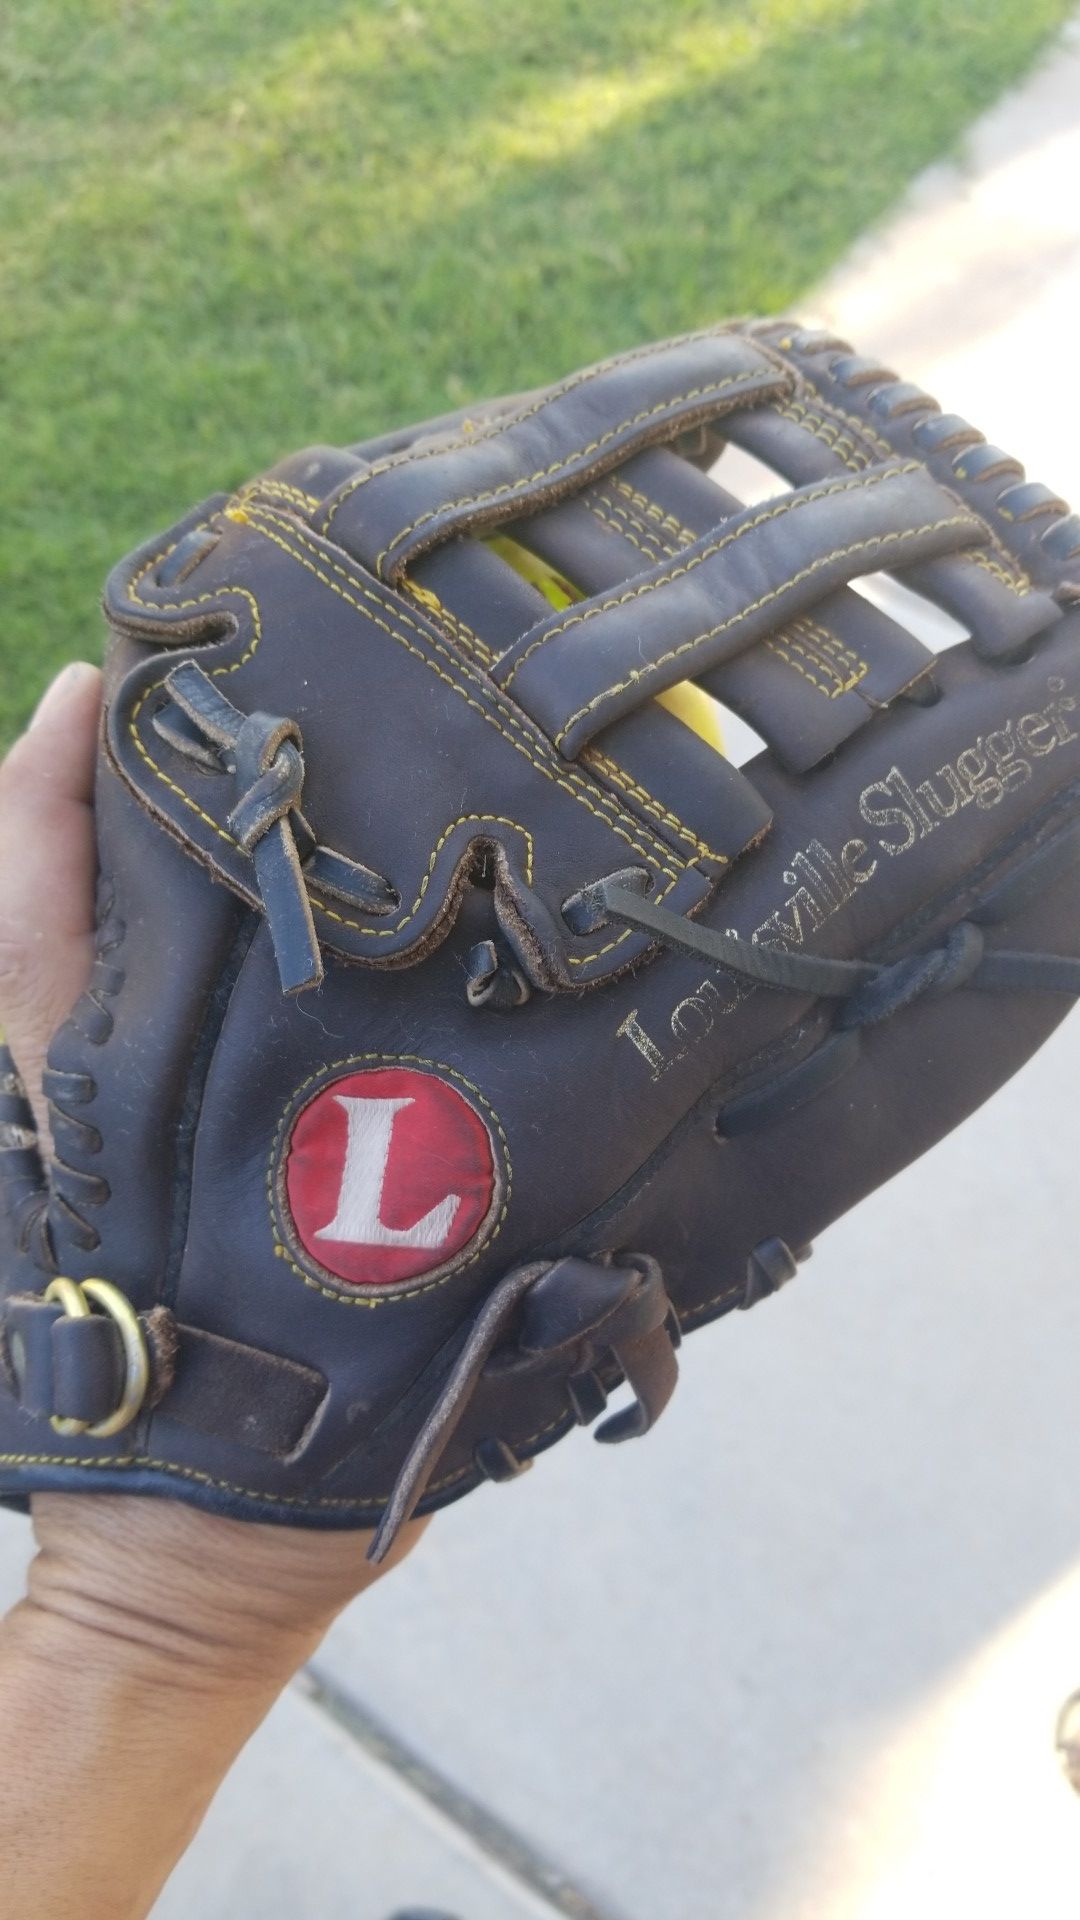 12in baseball glove